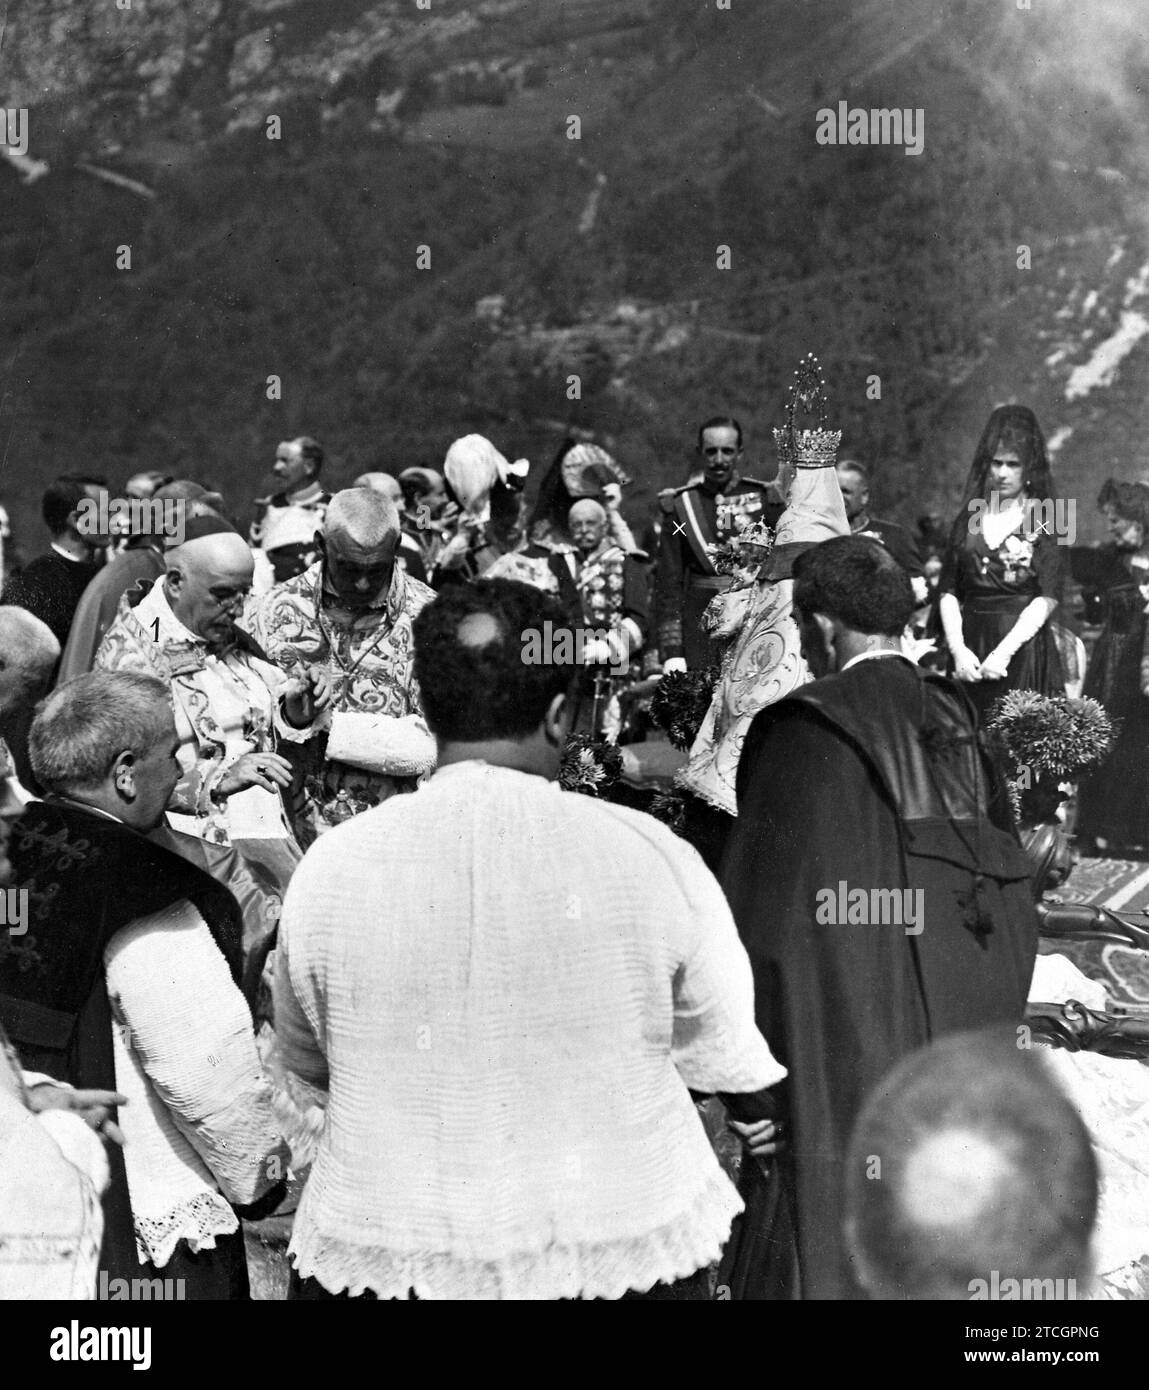 09/07/1918. 12. 100. Jahrestag der Schlacht von Covadonga. Feierliche Krönung des wundersamen Bildes der Jungfrau von Covadonga durch seine Eminenz, den Kardinalprimaten (1) in Gegenwart ihrer Majestäten (X). Quelle: Album / Archivo ABC / Ramón Alba Stockfoto